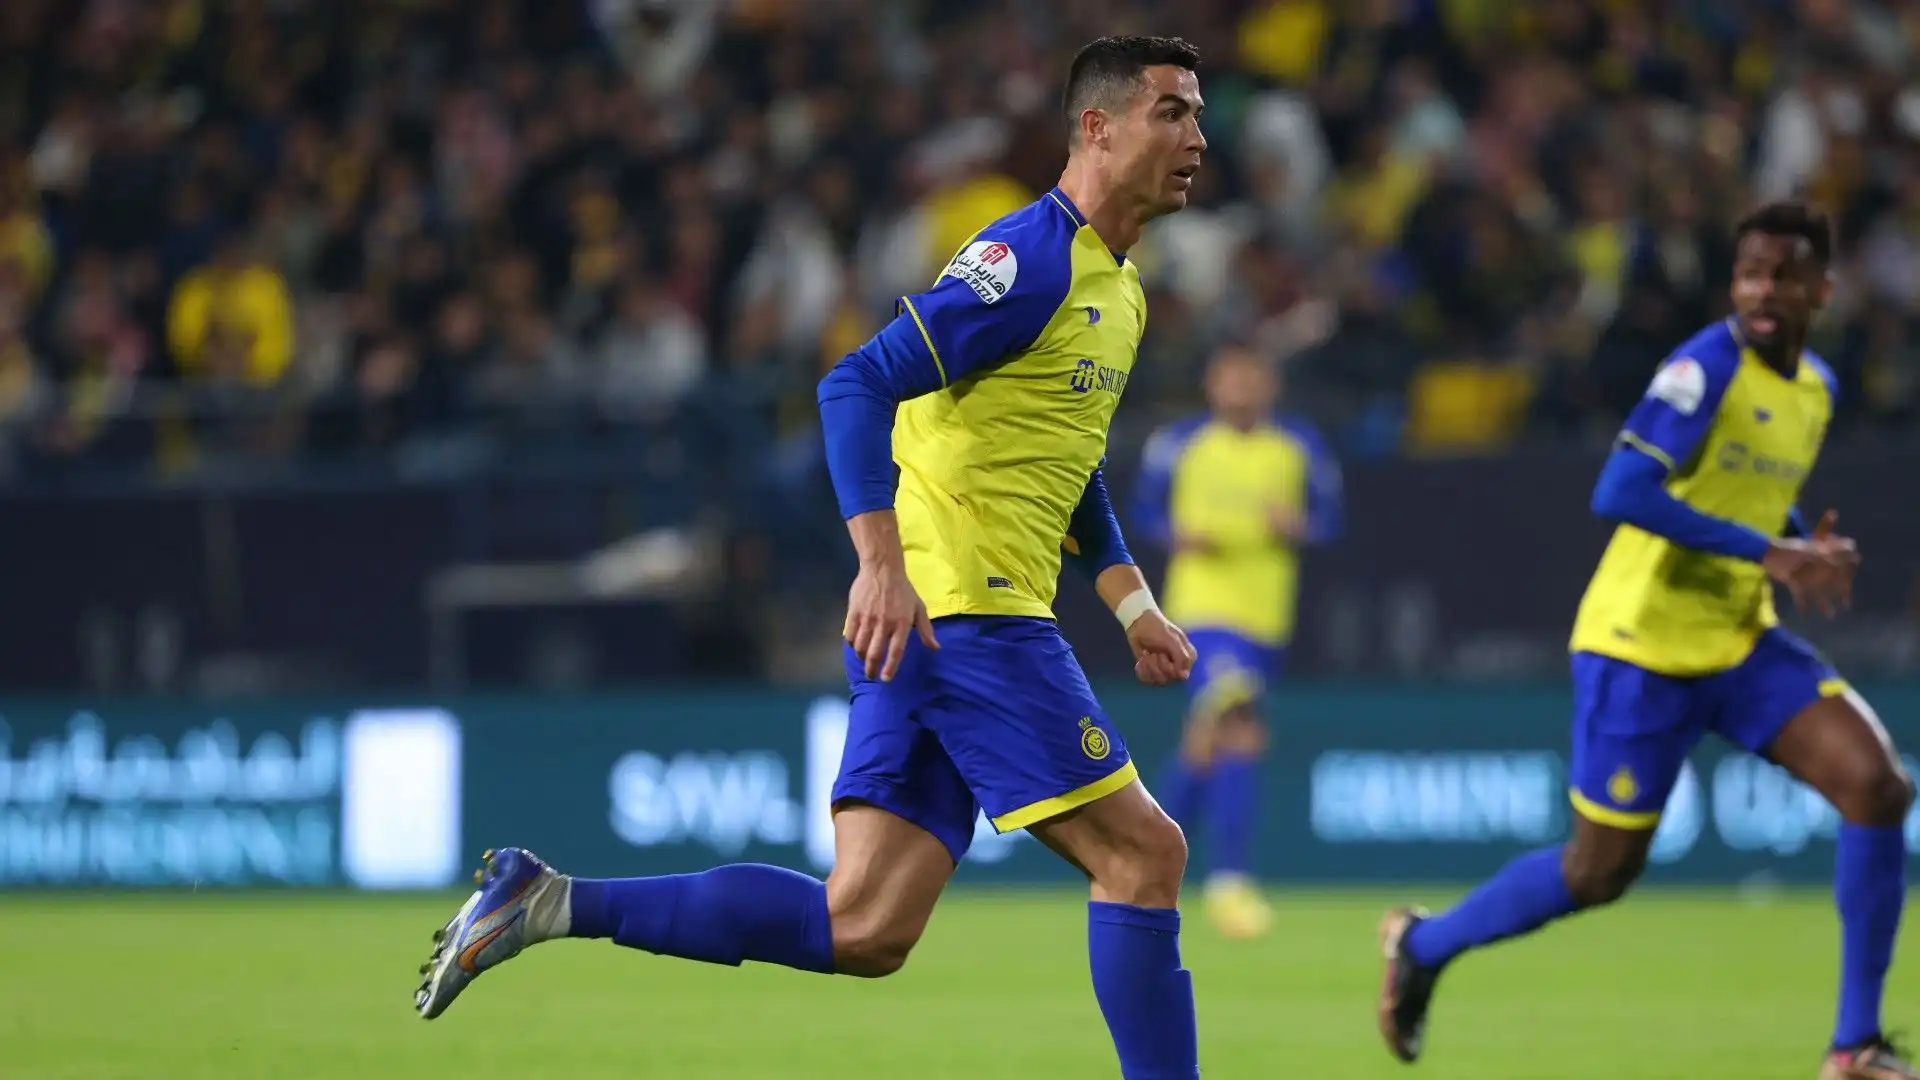 L'Al Nassr ha vinto per 1-0 contro l'Al Ettifaq, in gol Talisca al minuto 31